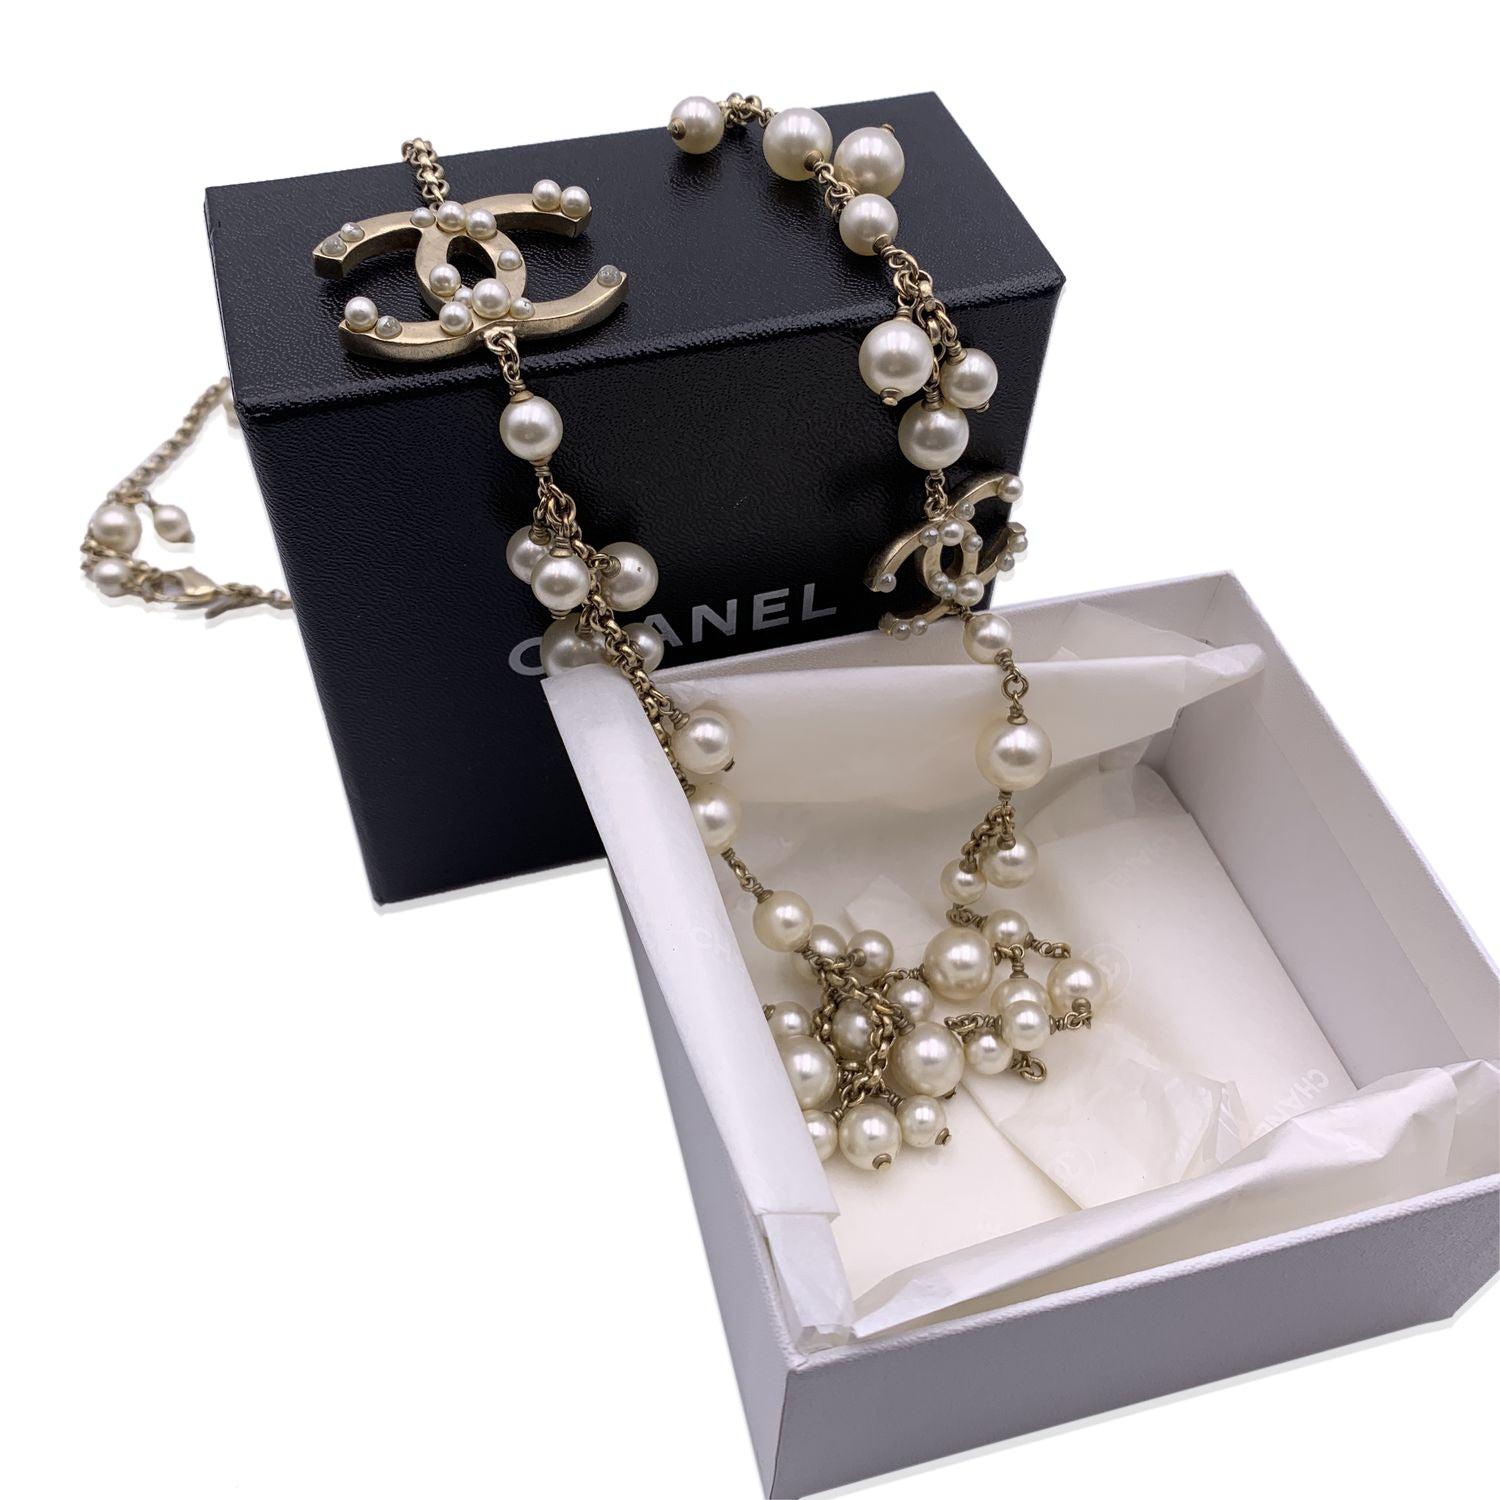 Long collier en chaîne en métal ancien et léger de Chanel. Il comporte des perles artificielles de différentes tailles et des logos CC agrémentés de petites fausses perles. Fermeture en homard. Peut également être porté doublé. 'CHANEL - A13 CC S-